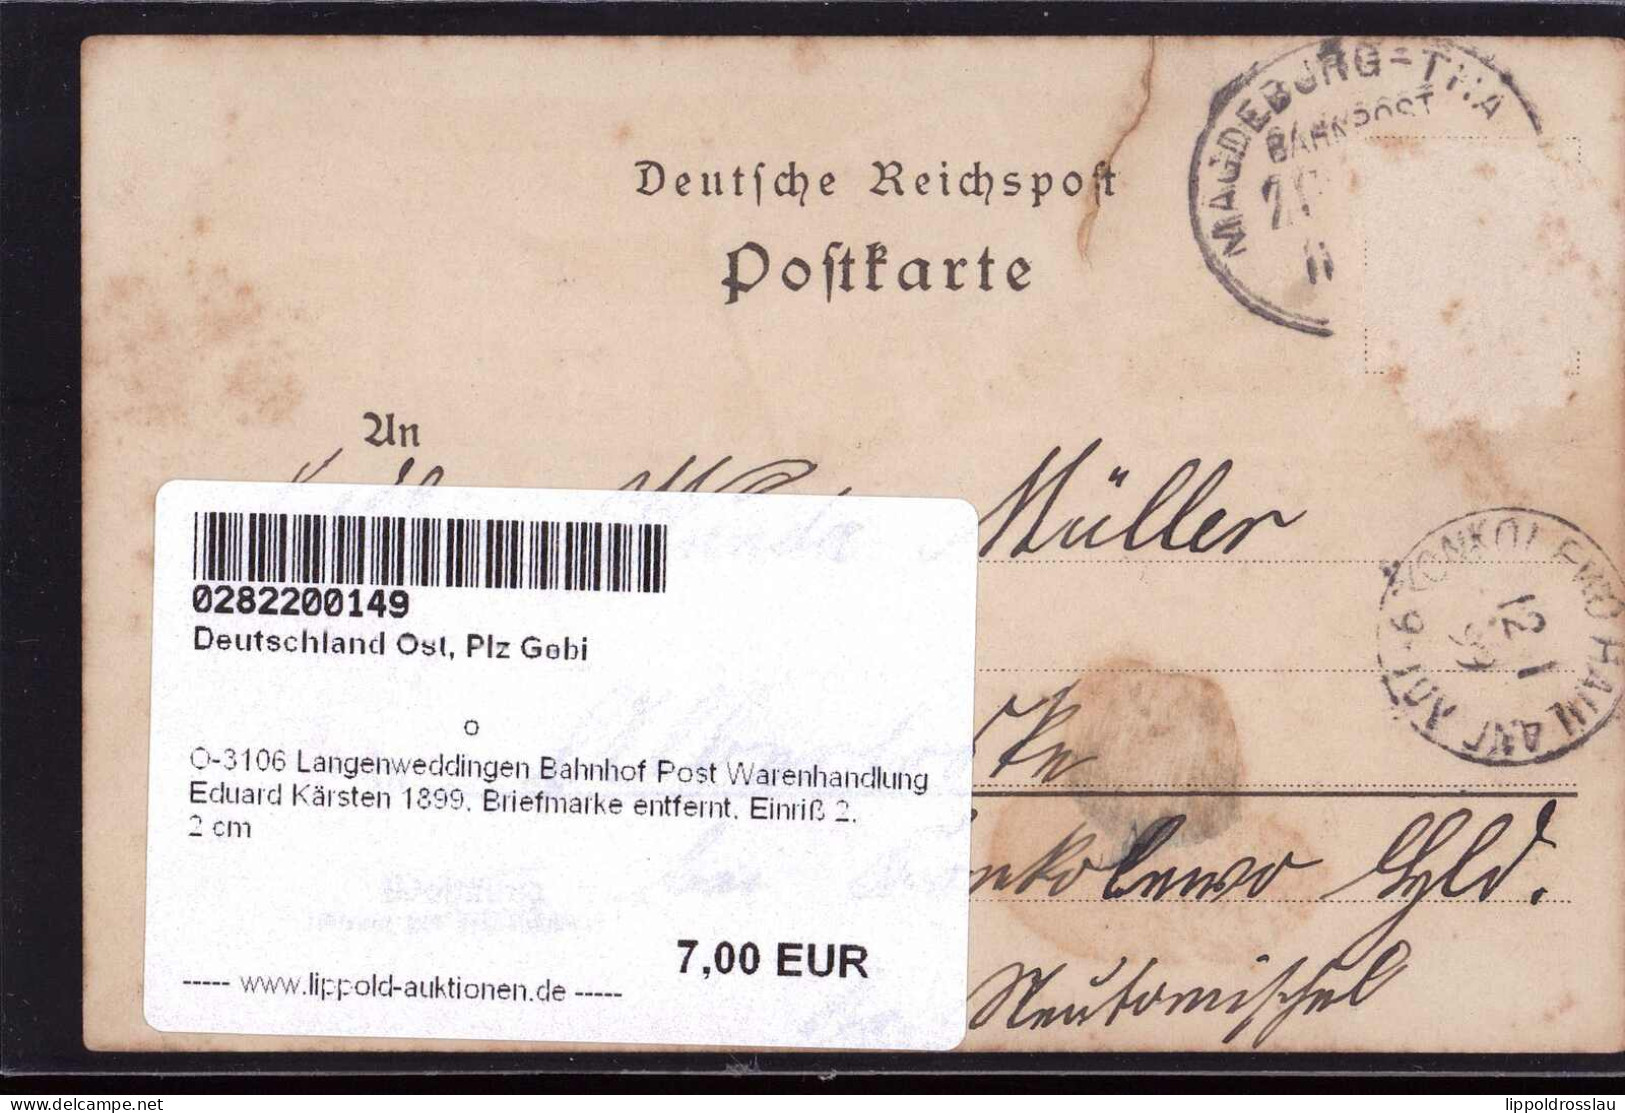 Gest. O-3106 Langenweddingen Bahnhof Post Warenhandlung Eduard Kärsten 1899, Briefmarke Entfernt, Einriß 2,2 Cm - Maagdenburg